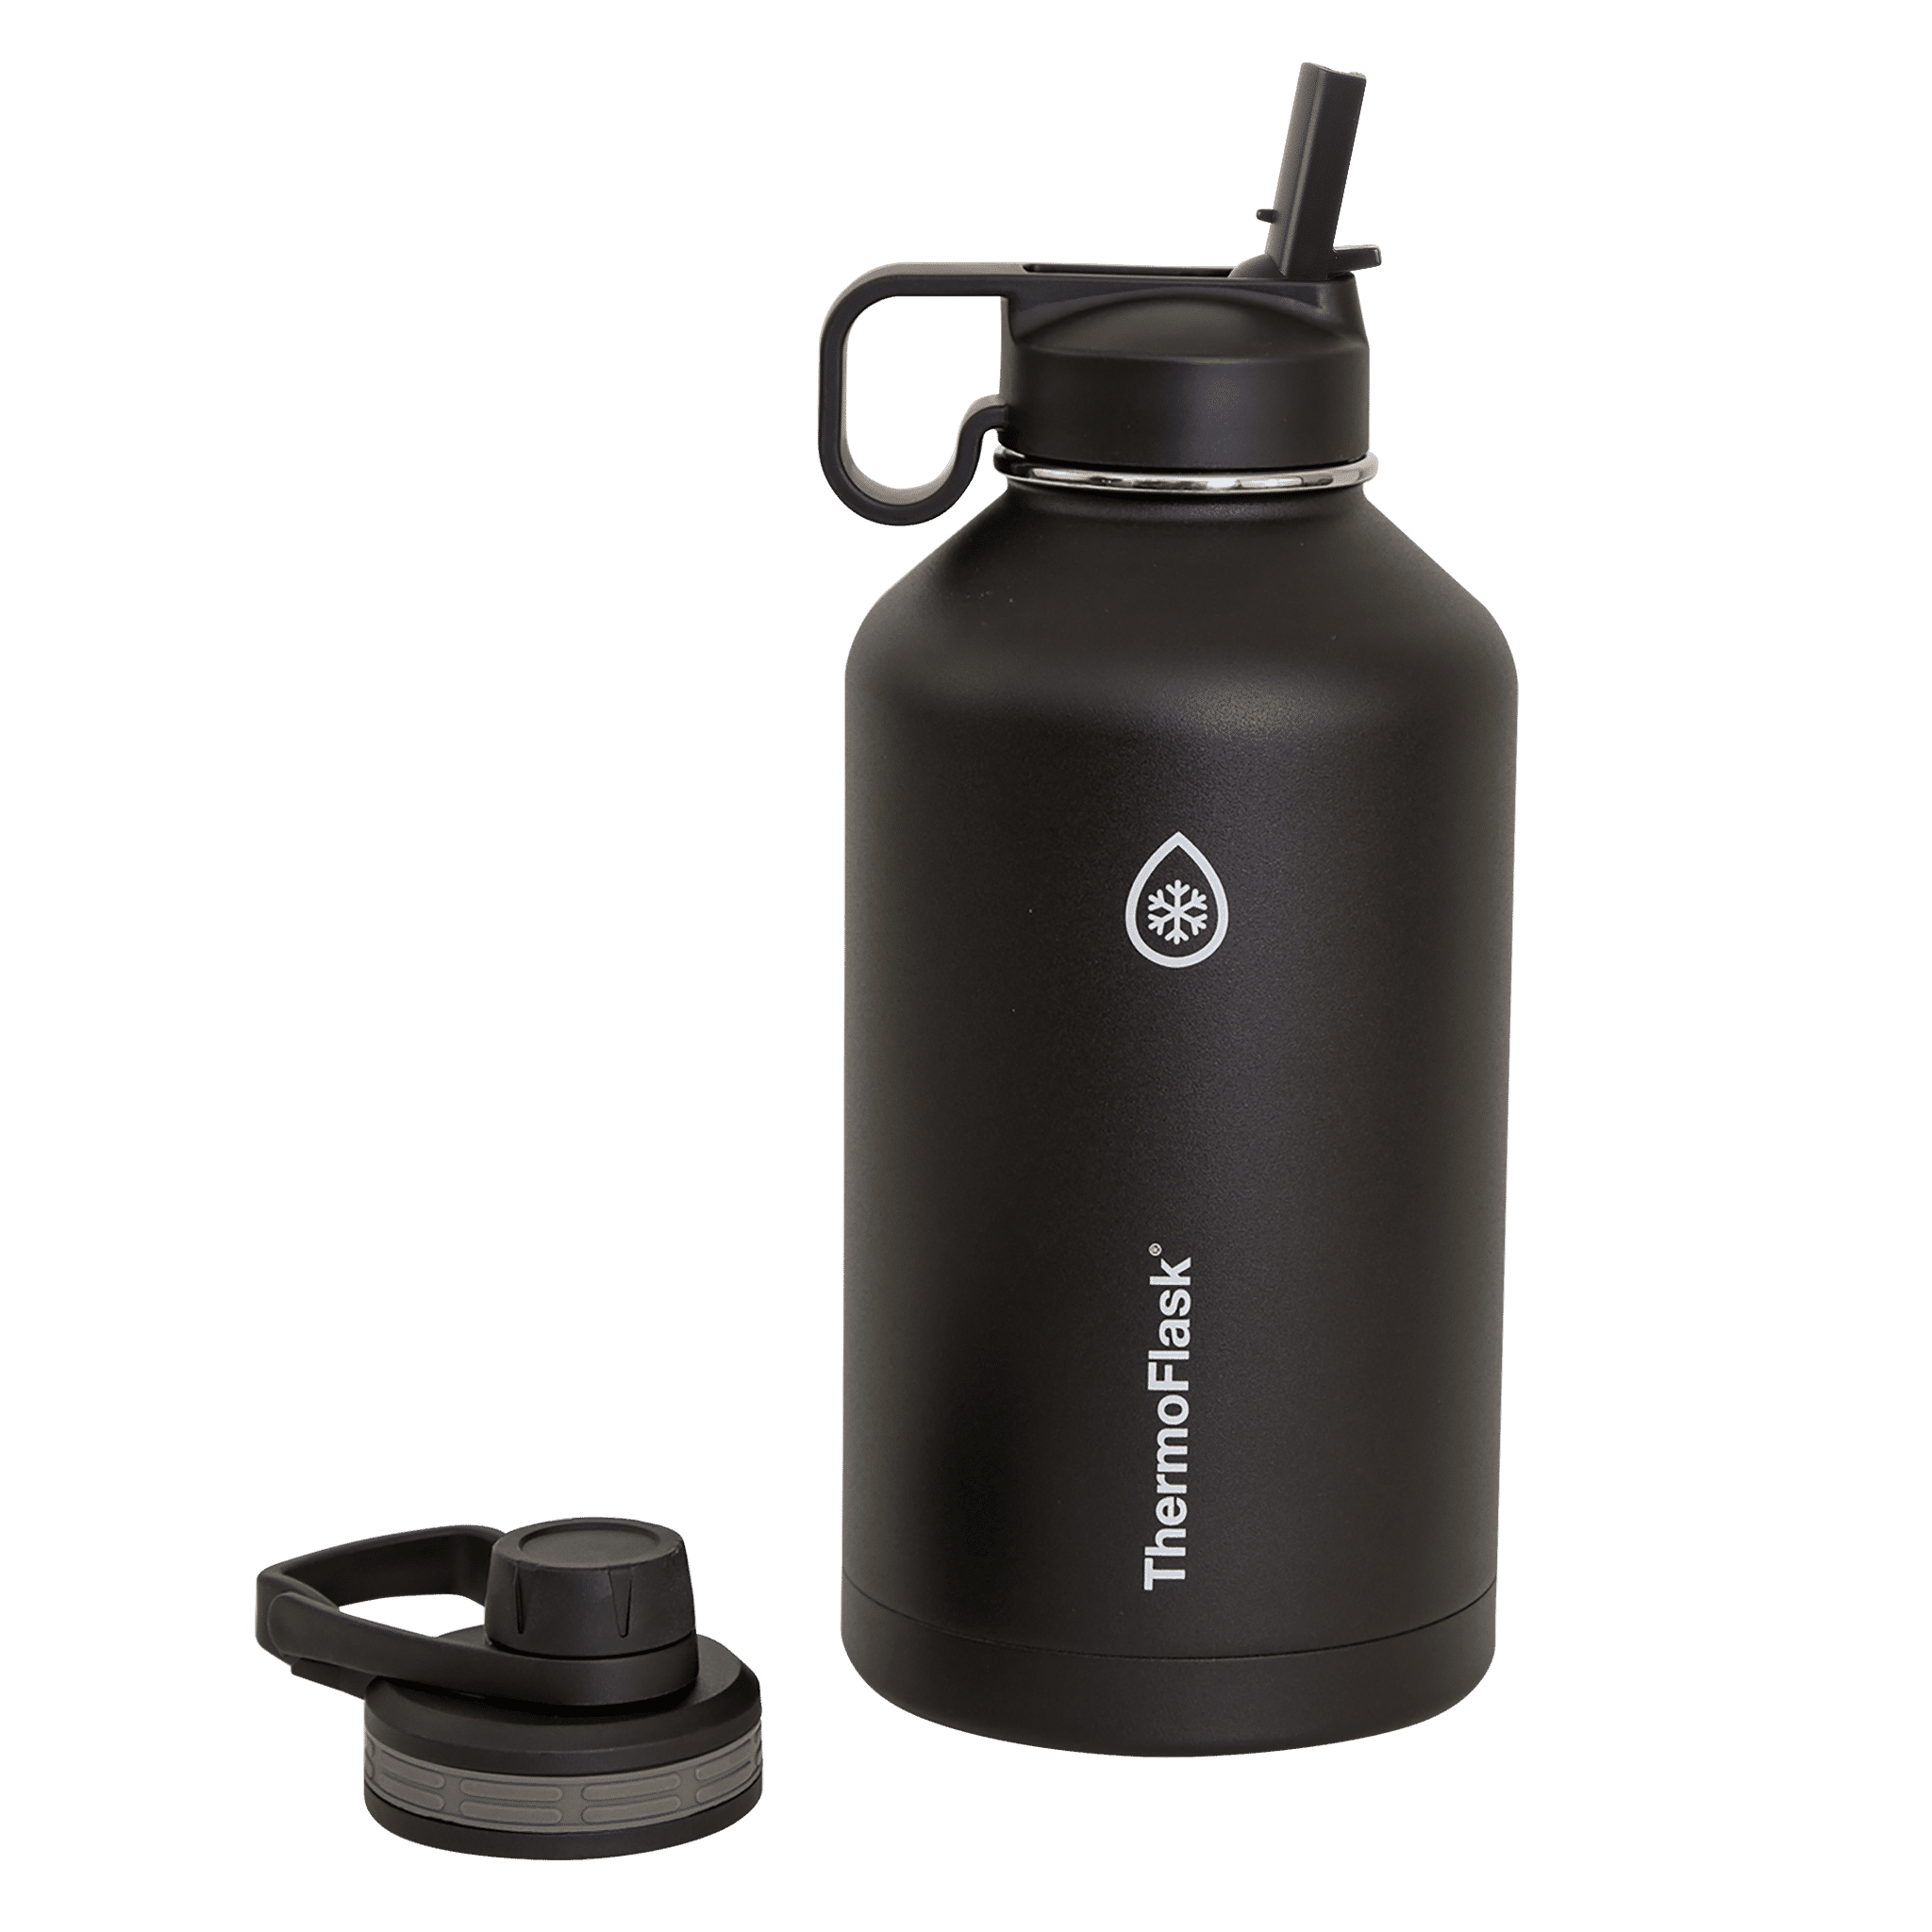 BOSORIO 4 Pack Gaskets Compatible with Contigo AUTOSEAL 2.0 24oz 32oz 40oz  Water Bottle, Replacement Rubber Seal Part for Contigo AUTOSEAL Lid